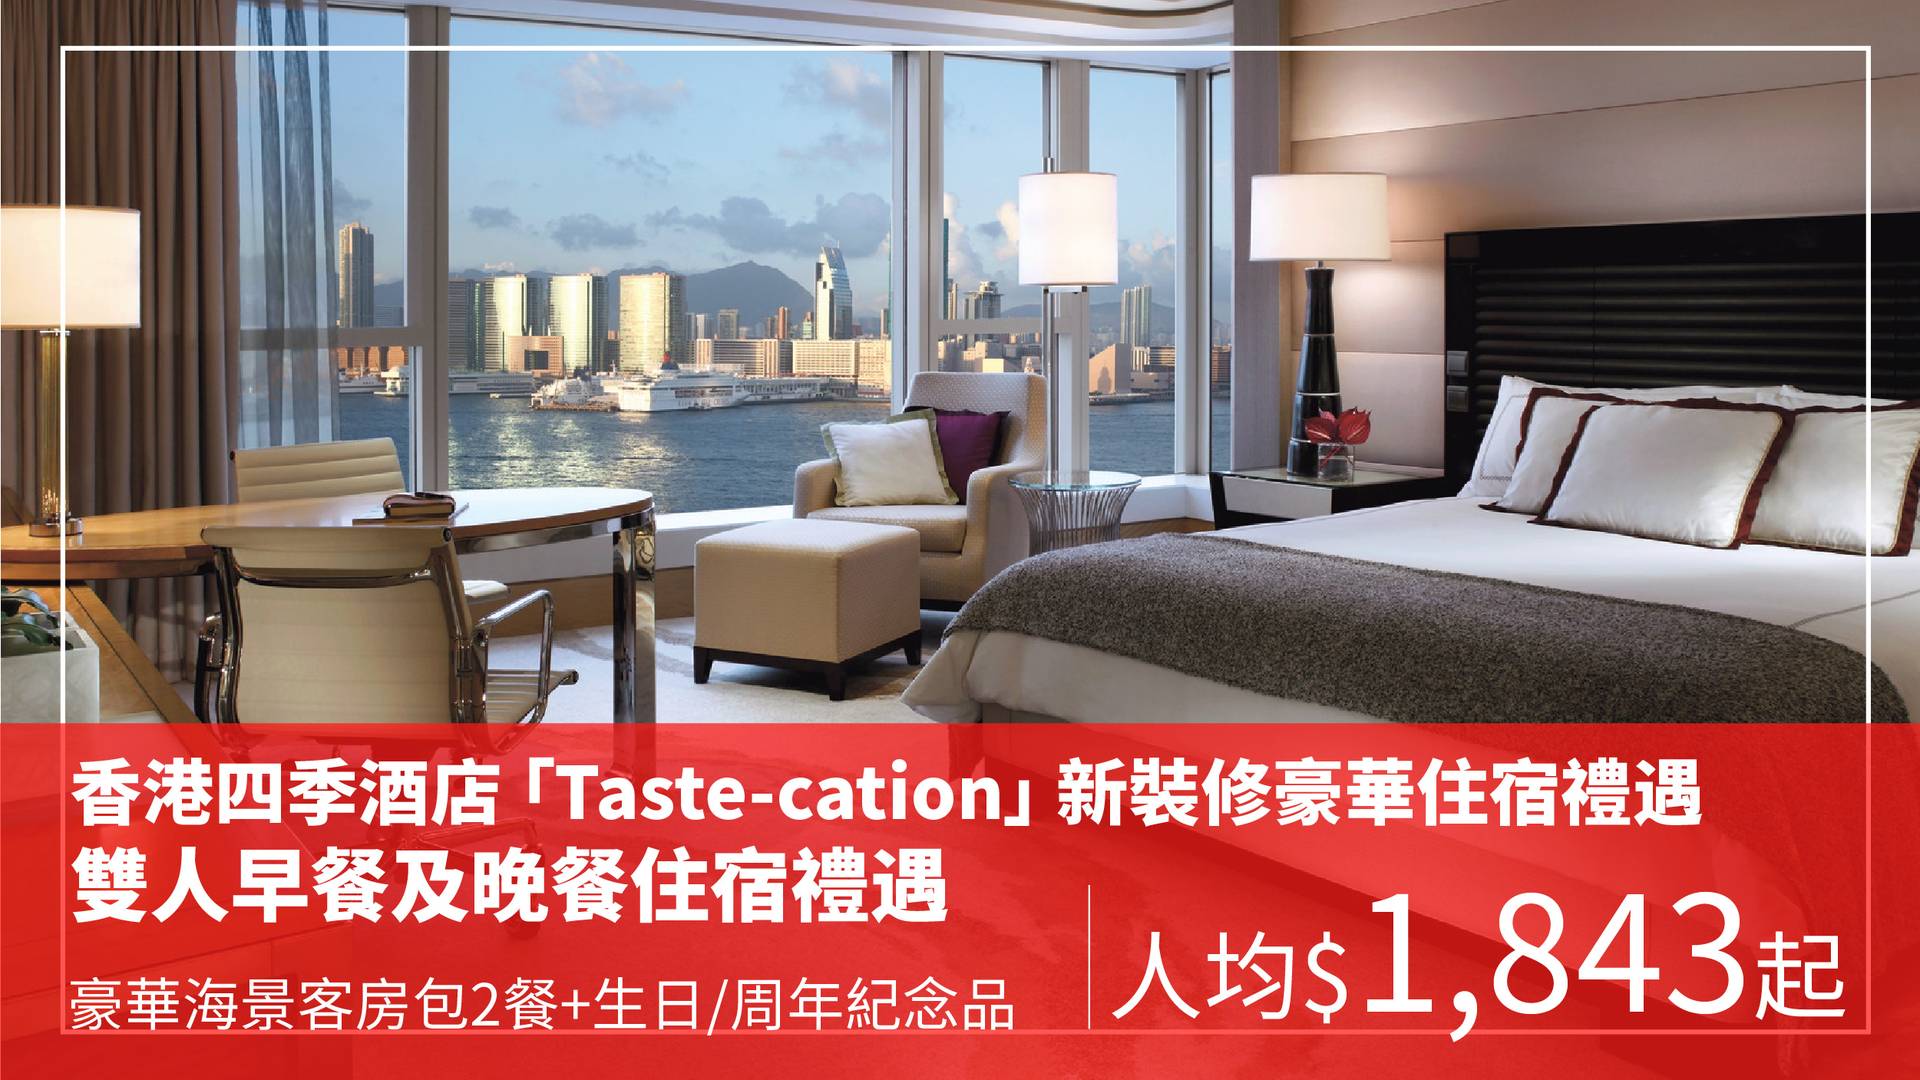 香港四季酒店 Taste-cation 新裝修豪華客房連雙人早餐及晚餐住宿套票（需3個工作天前預訂）